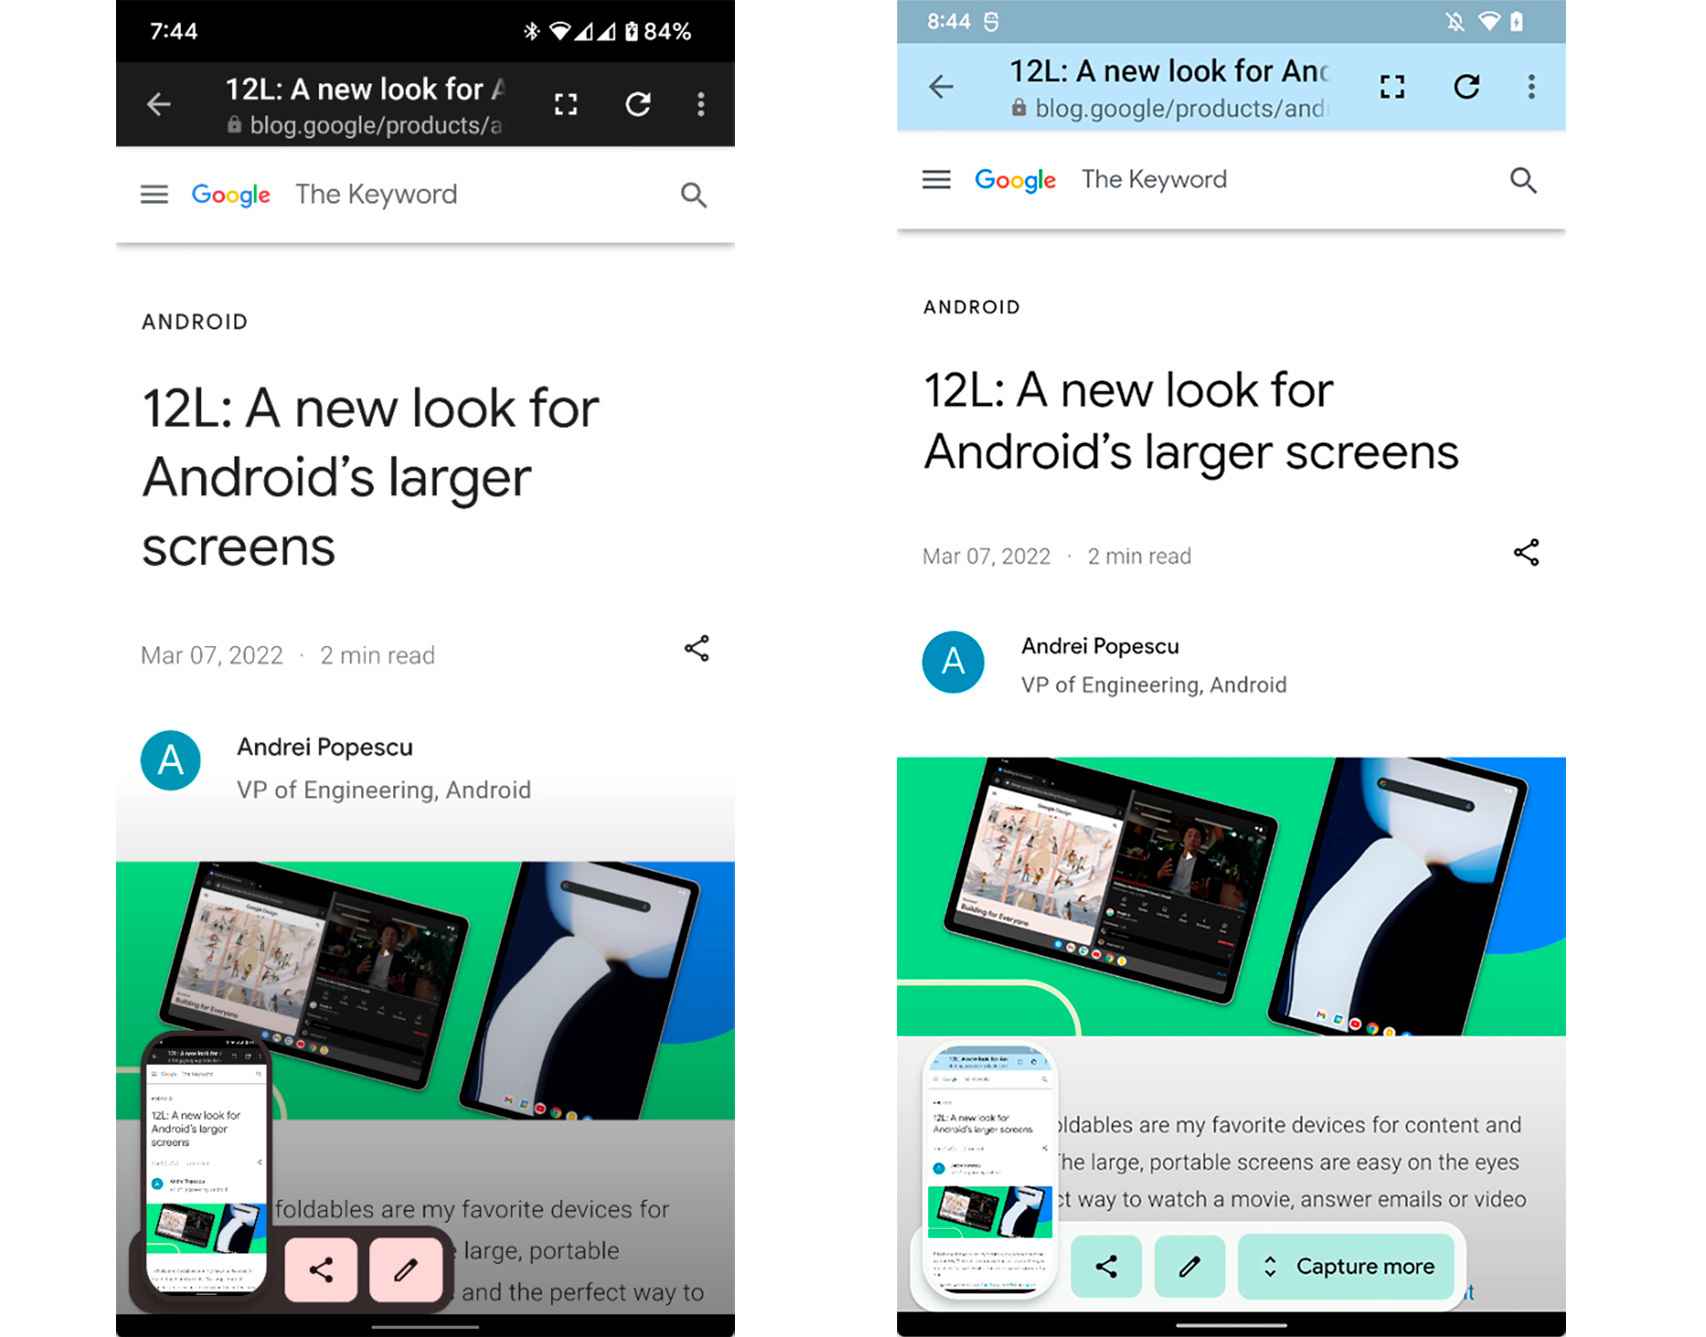 Captura de pantalla prolongada en la versión de la derecha de Android 12L. La otra es Android 12